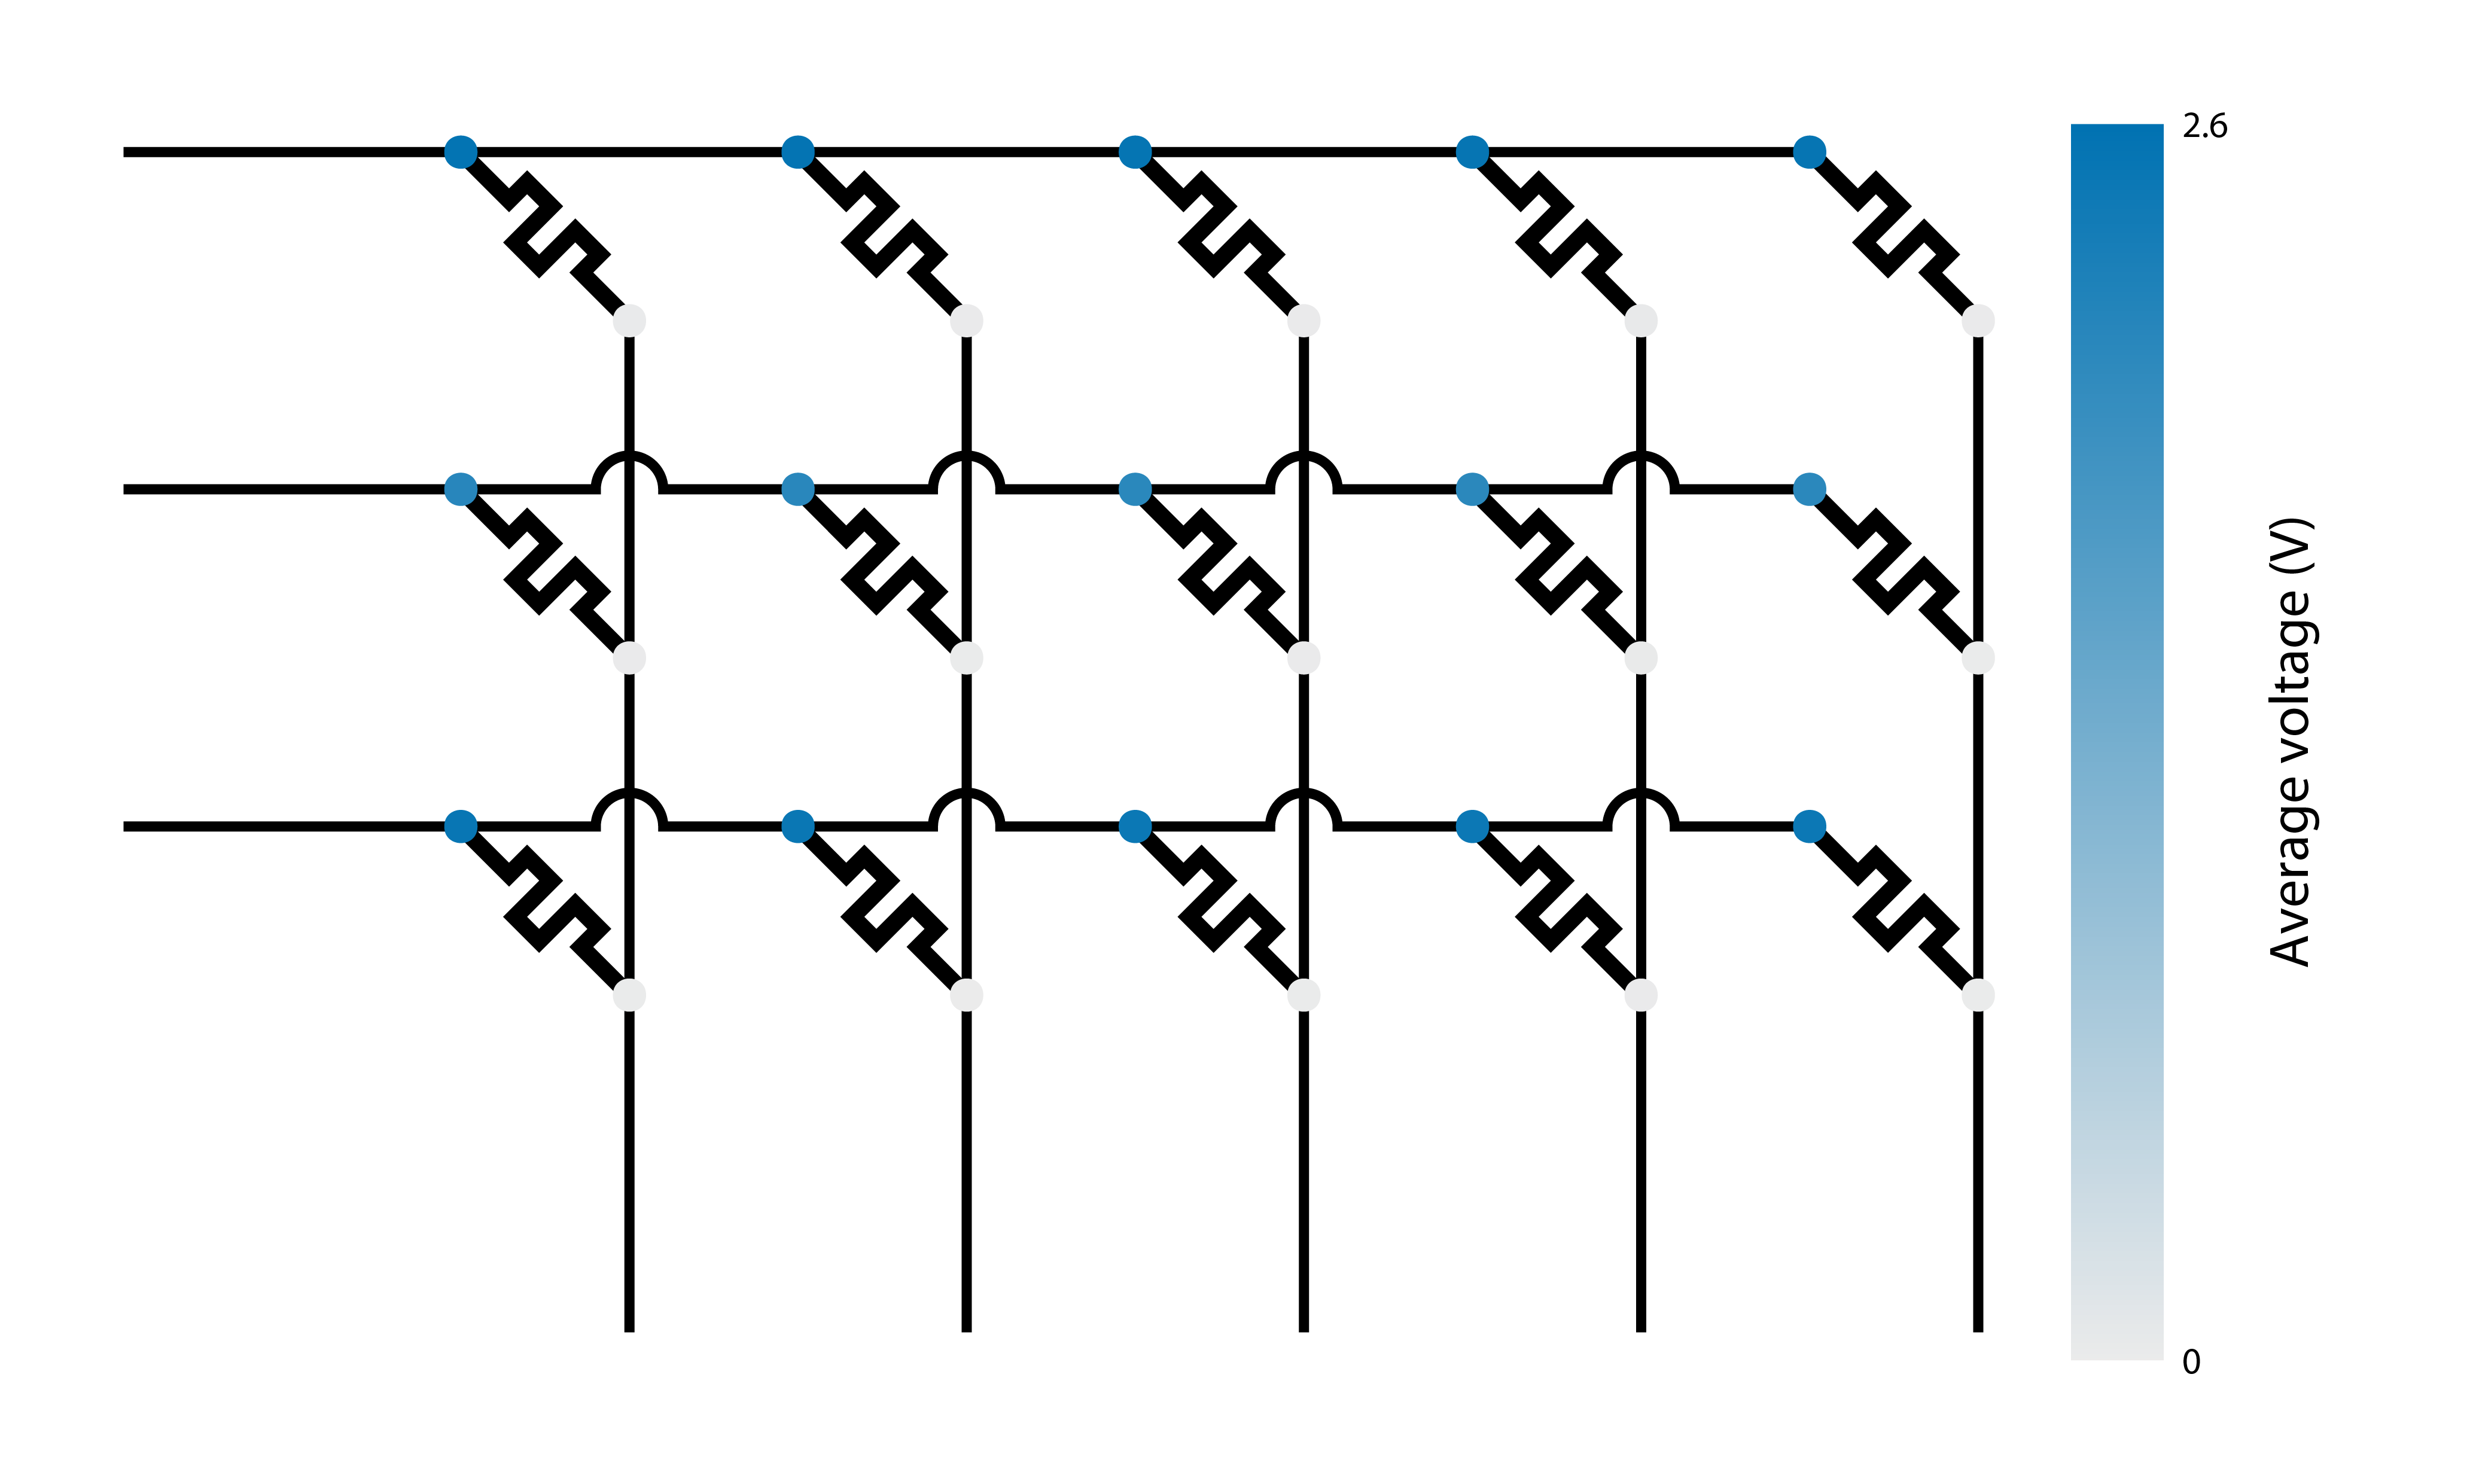 Crossbar voltages